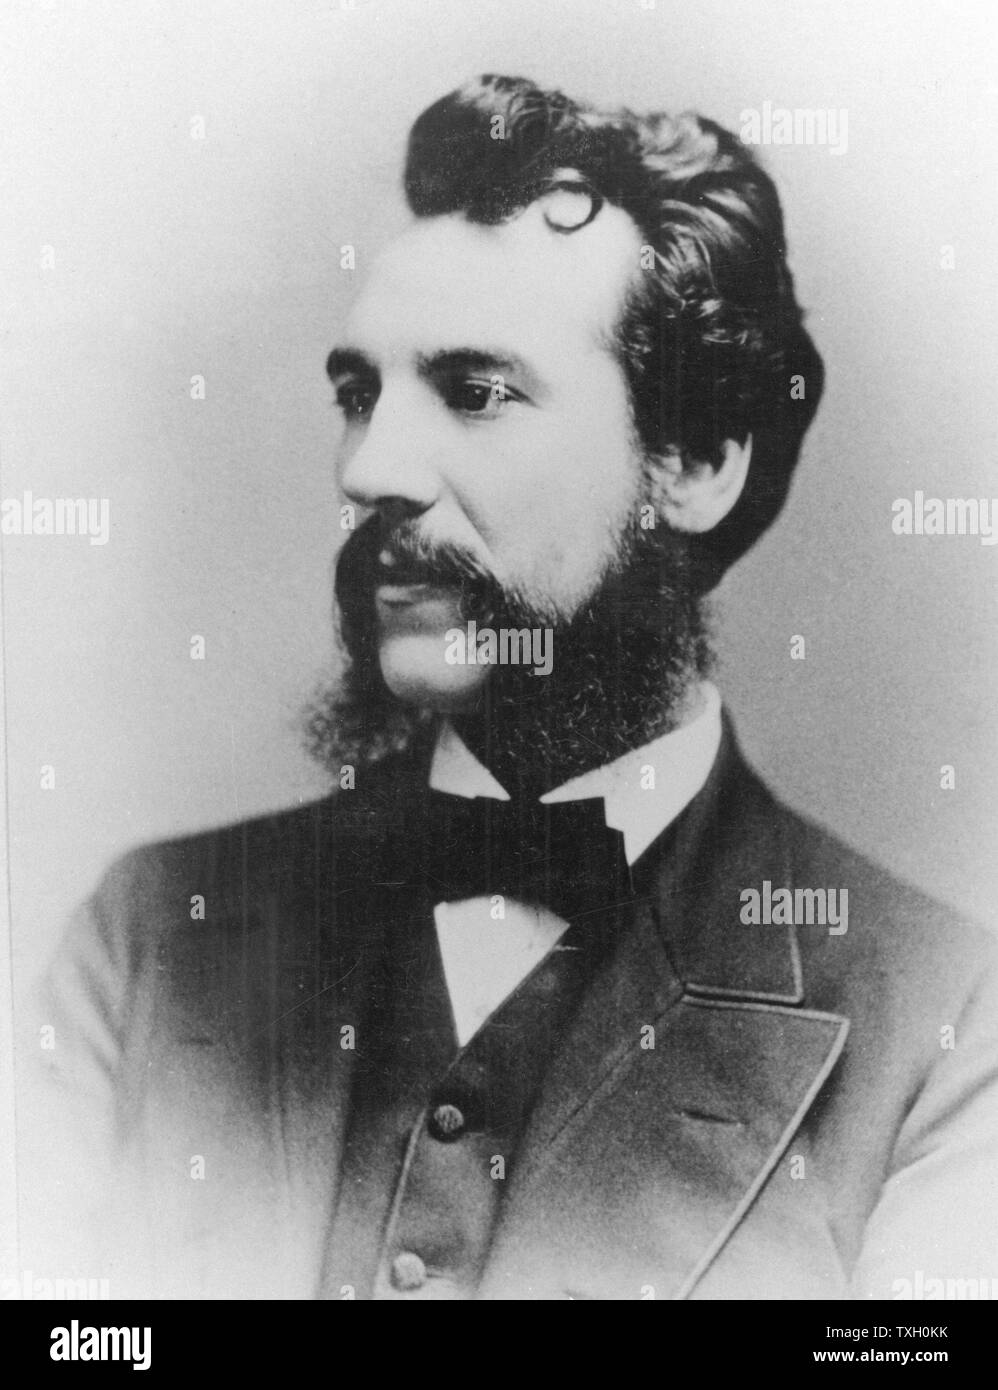 Alexander Graham Bell (1847-1922), inventeur américain d'origine écossaise ; téléphone breveté 1876. Photographie de Bell en tant qu'un jeune homme Banque D'Images